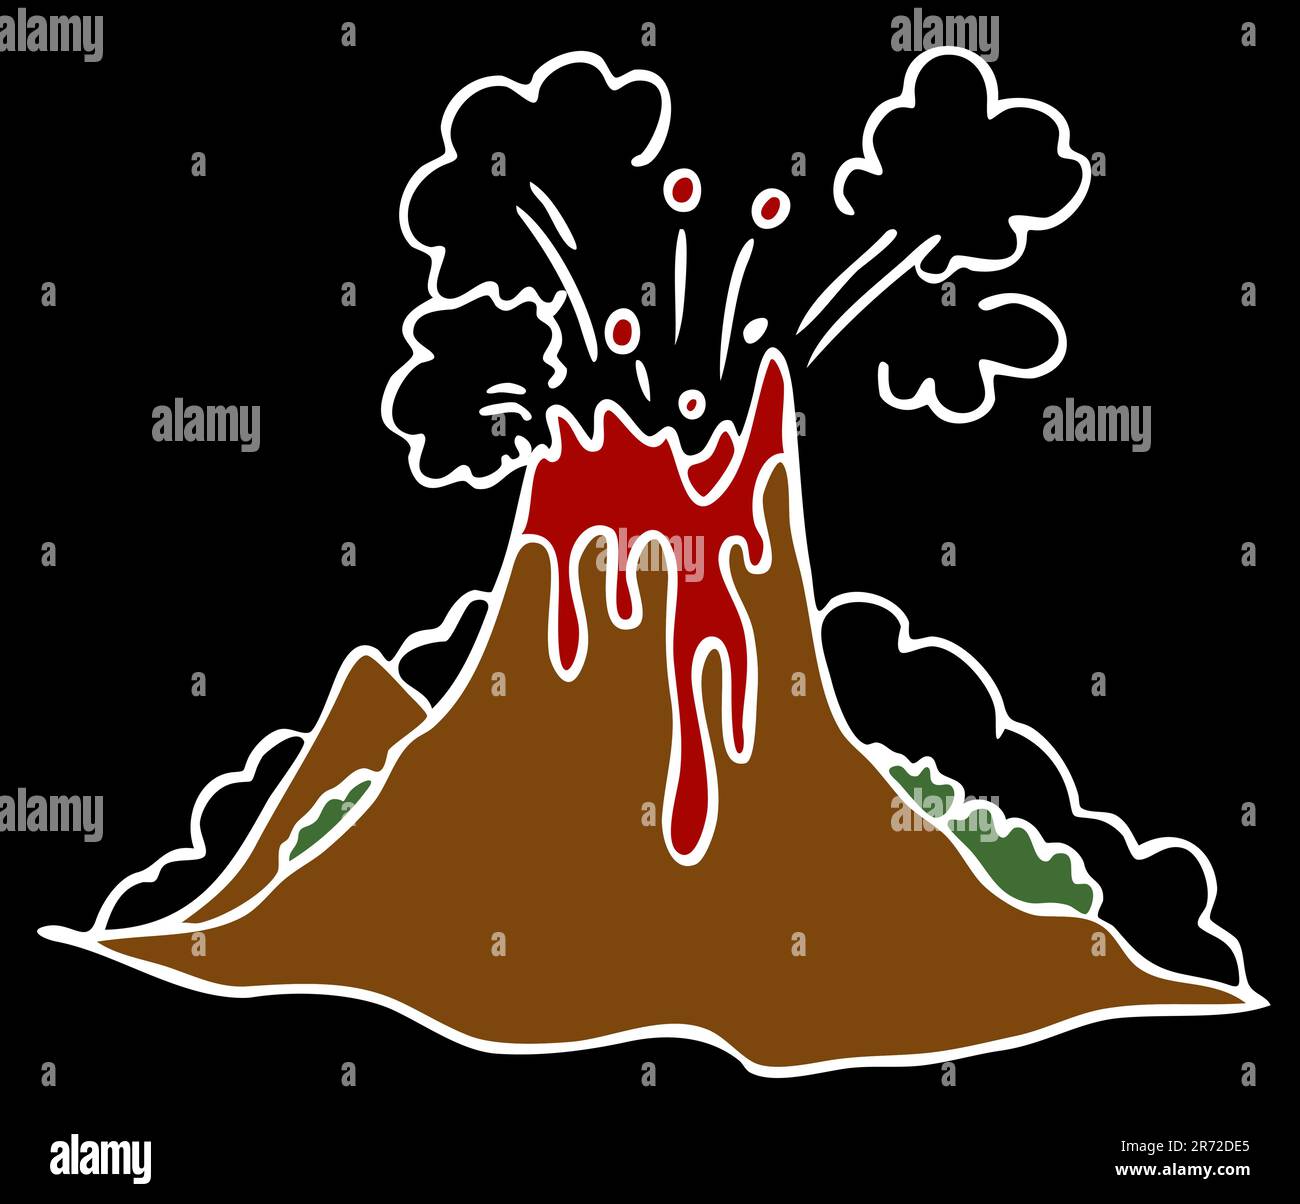 Ein Bild von einem explodierenden Vulkan auf einem schwarzen Hintergrund. Stock Vektor